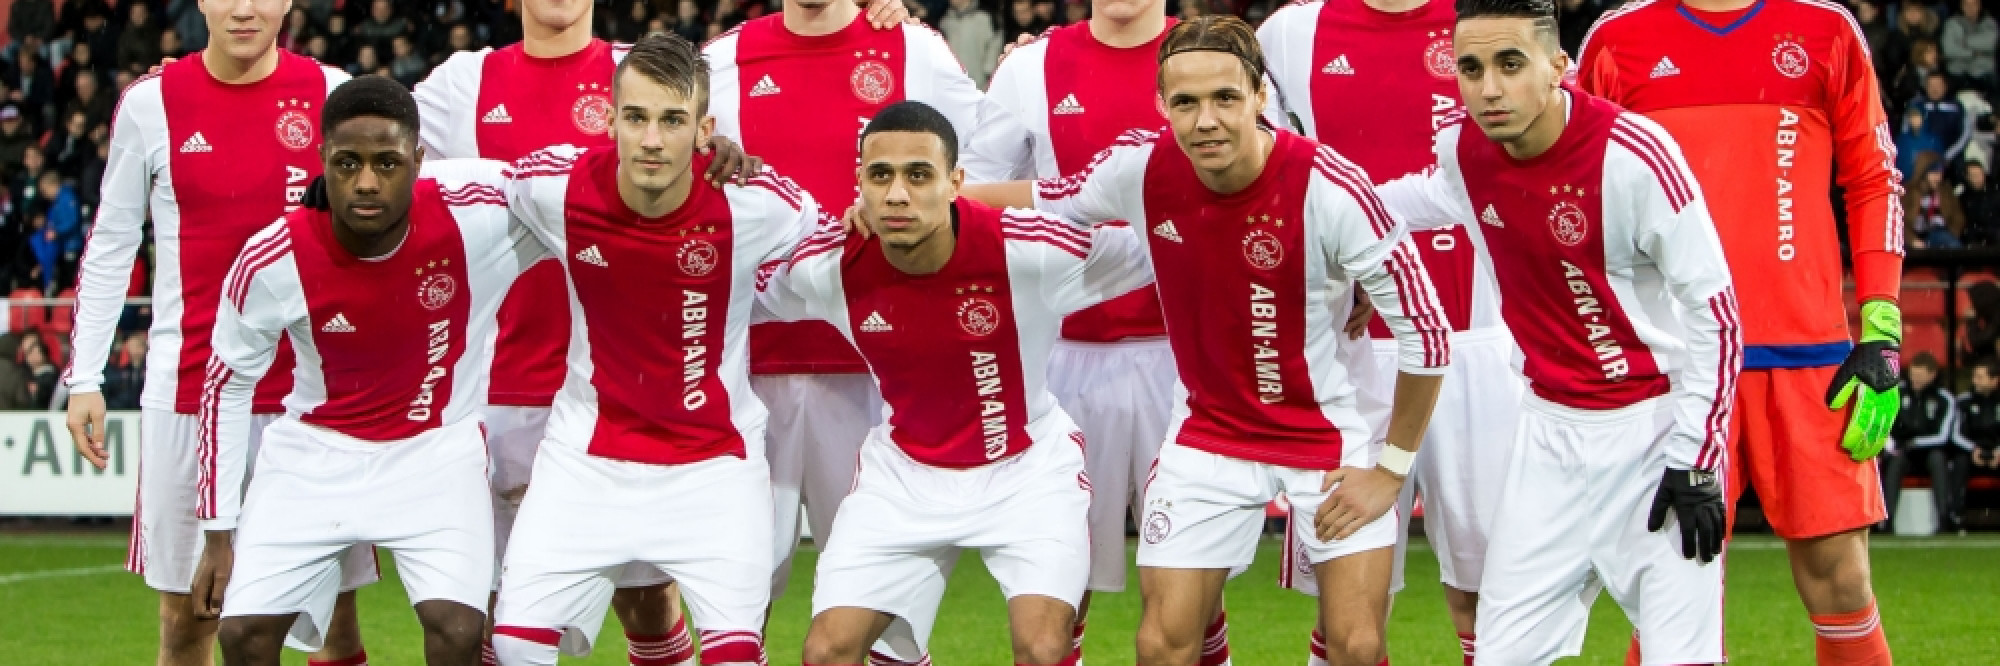 ik ben gelukkig terugbetaling Doe mijn best Beslissingswedstrijd Ajax A1 - PSV A1 in stadion van FC Emmen - NH Nieuws